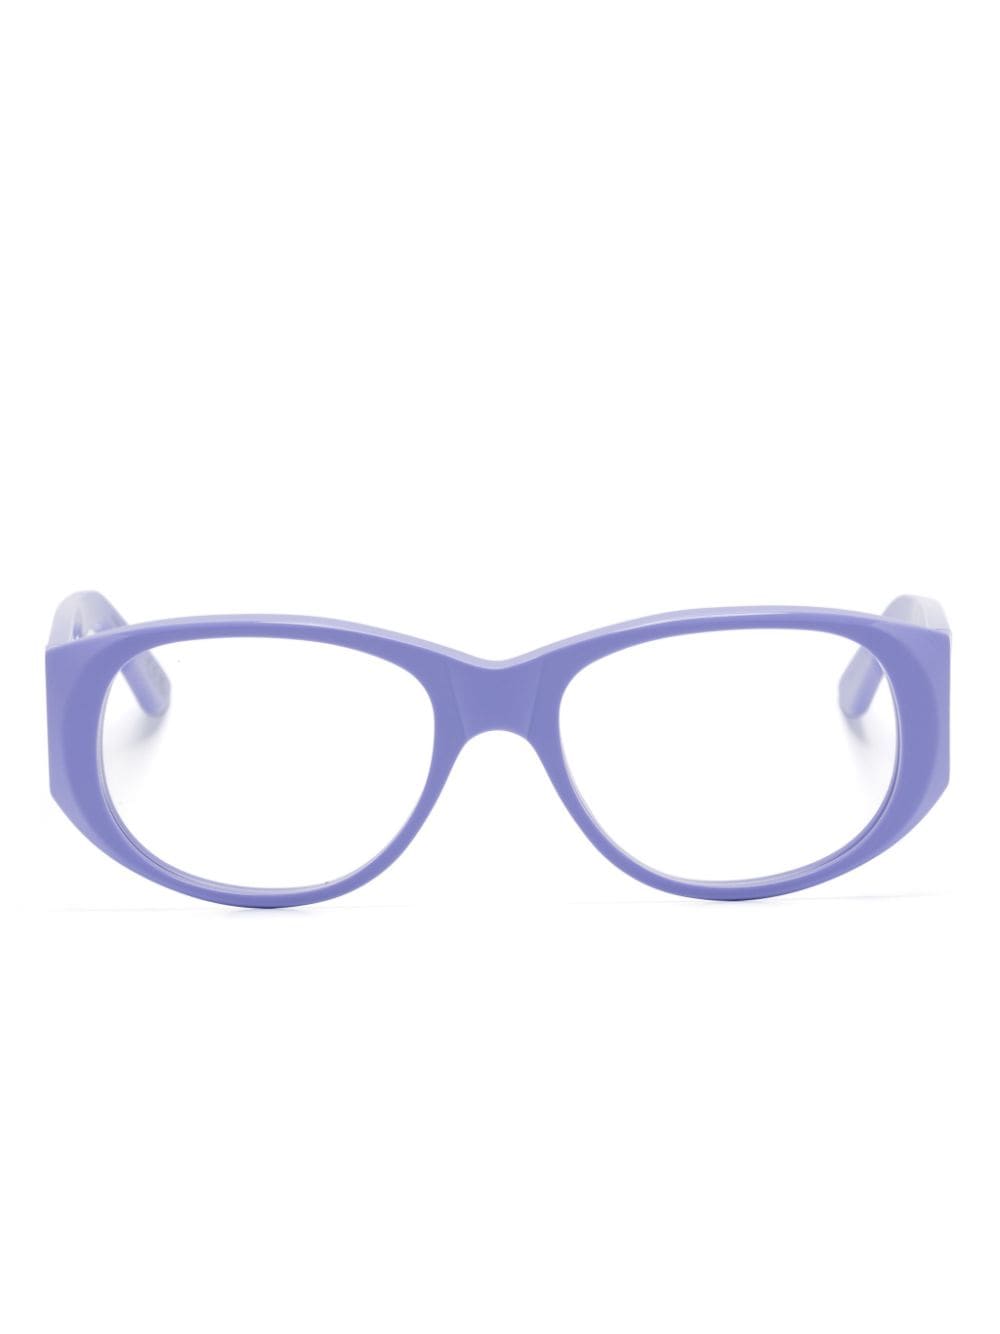 Marni Eyewear Orinoco River Brille mit eckigem Gestell - Violett von Marni Eyewear